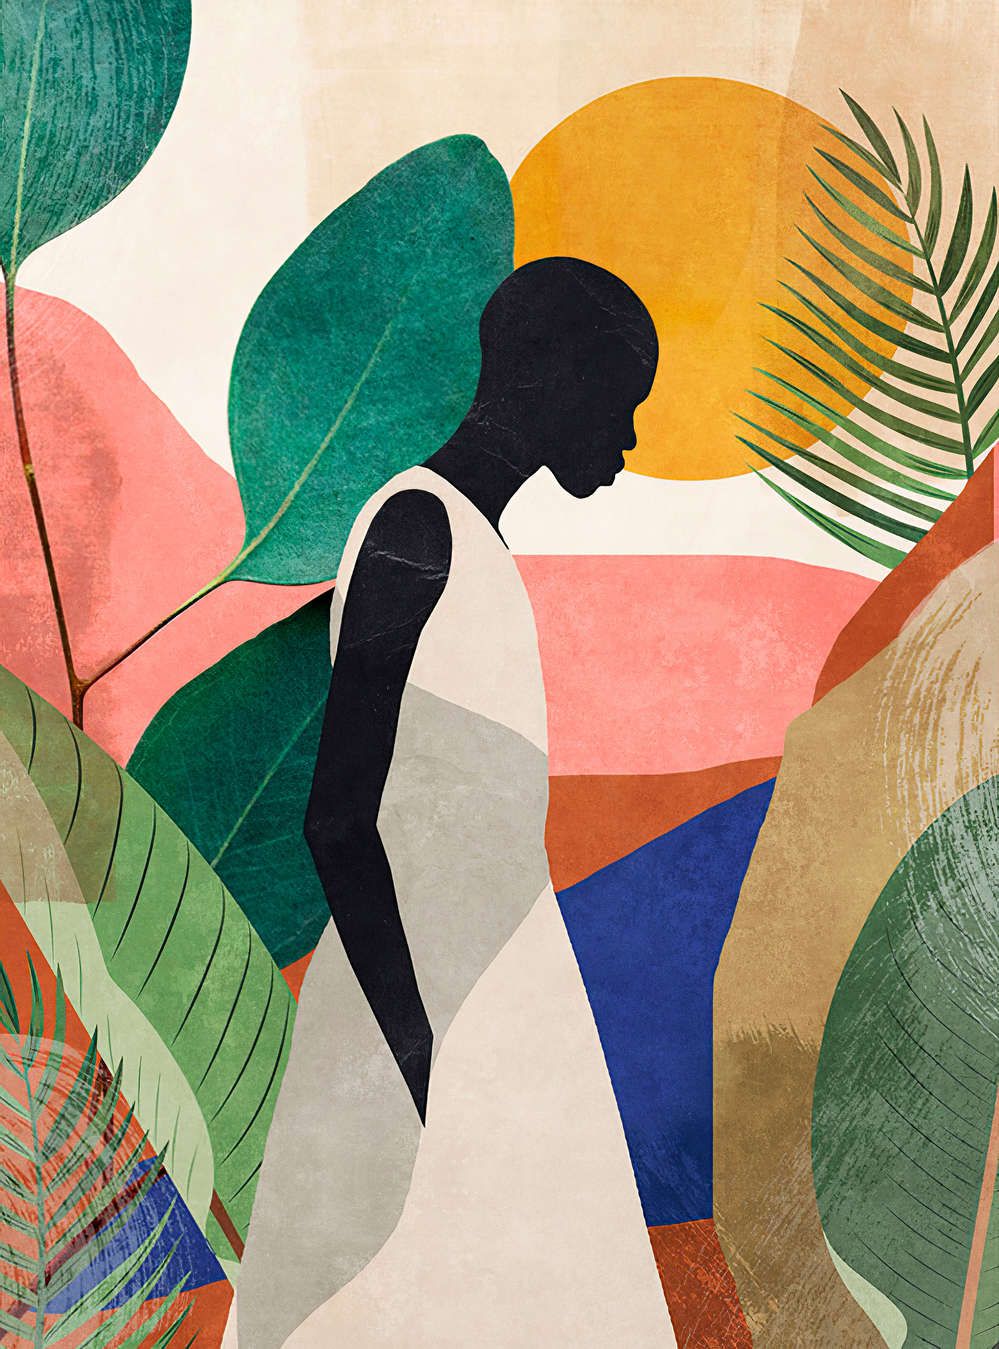             Fotomural »nala« - Silueta, hojas y hierbas - Motivo colorido sobre textura de yeso vintage | Tela no tejida mate, lisa
        